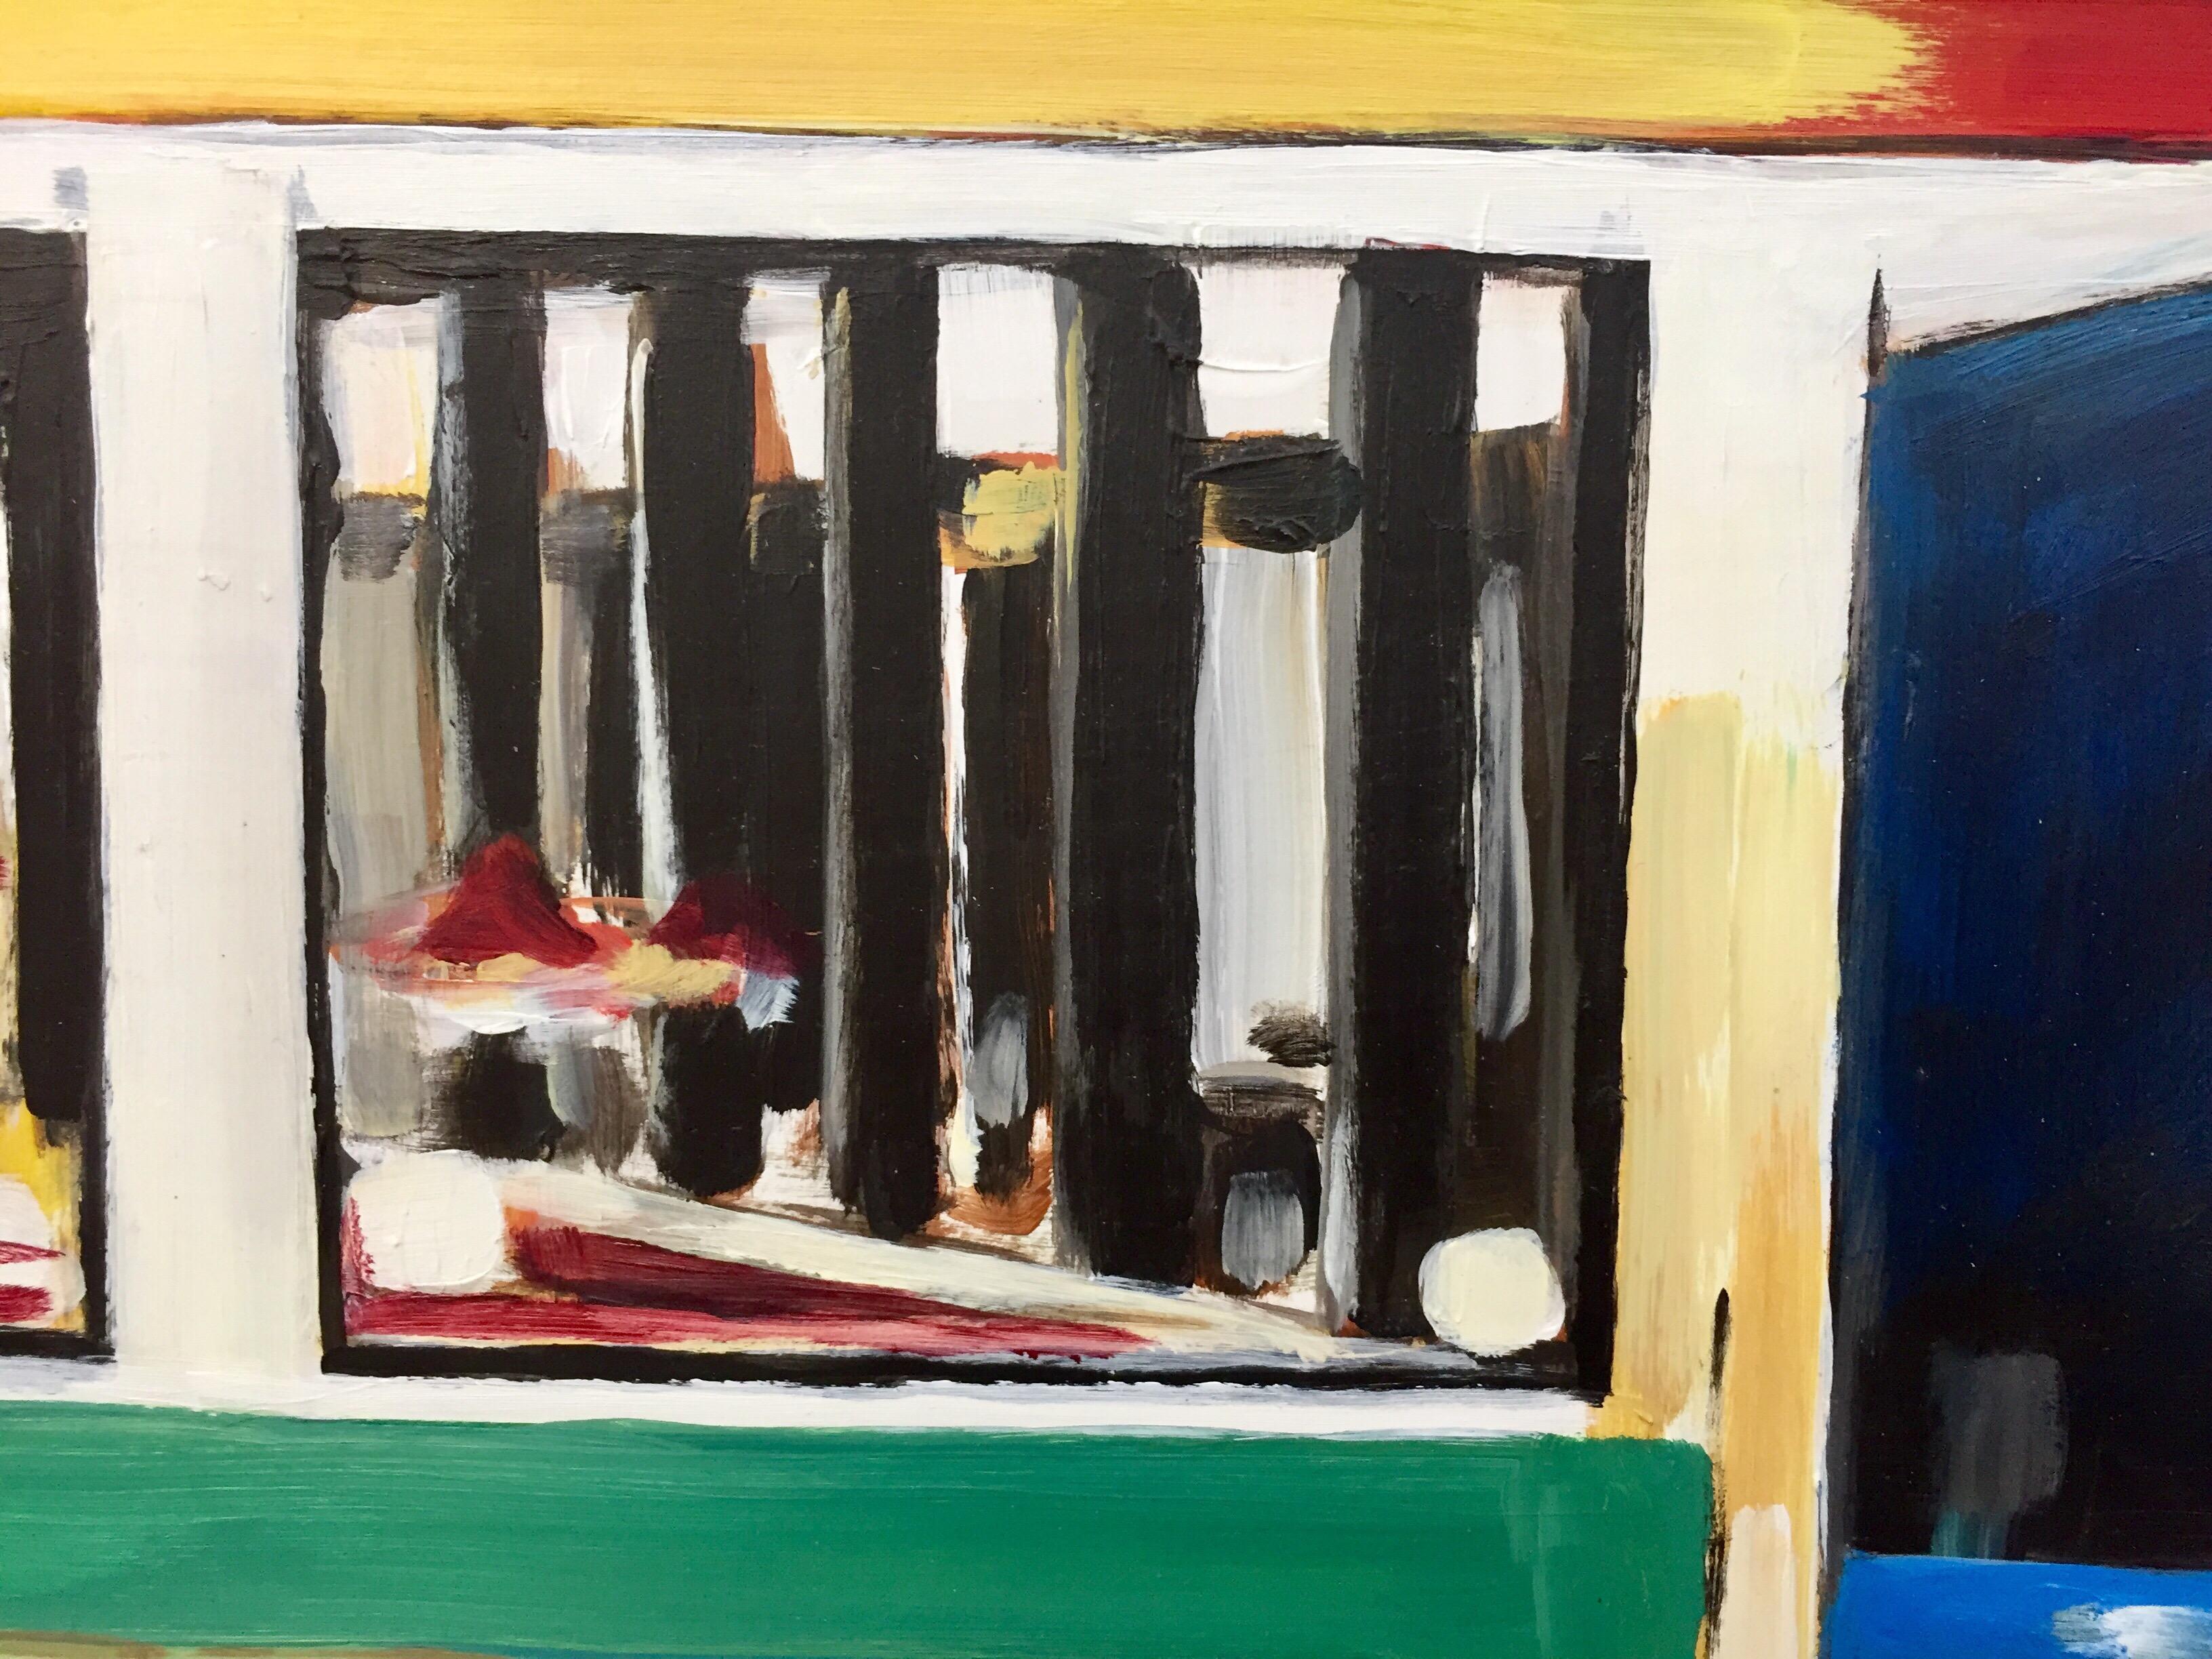 Edward Hopper American Diner Painting by Leading British Urban Landscape Artist, Angela Wakefield. Peintures de restaurants américains, d'aires de restauration, de relais routiers, de stations-service, de natures mortes et de tous les aspects de